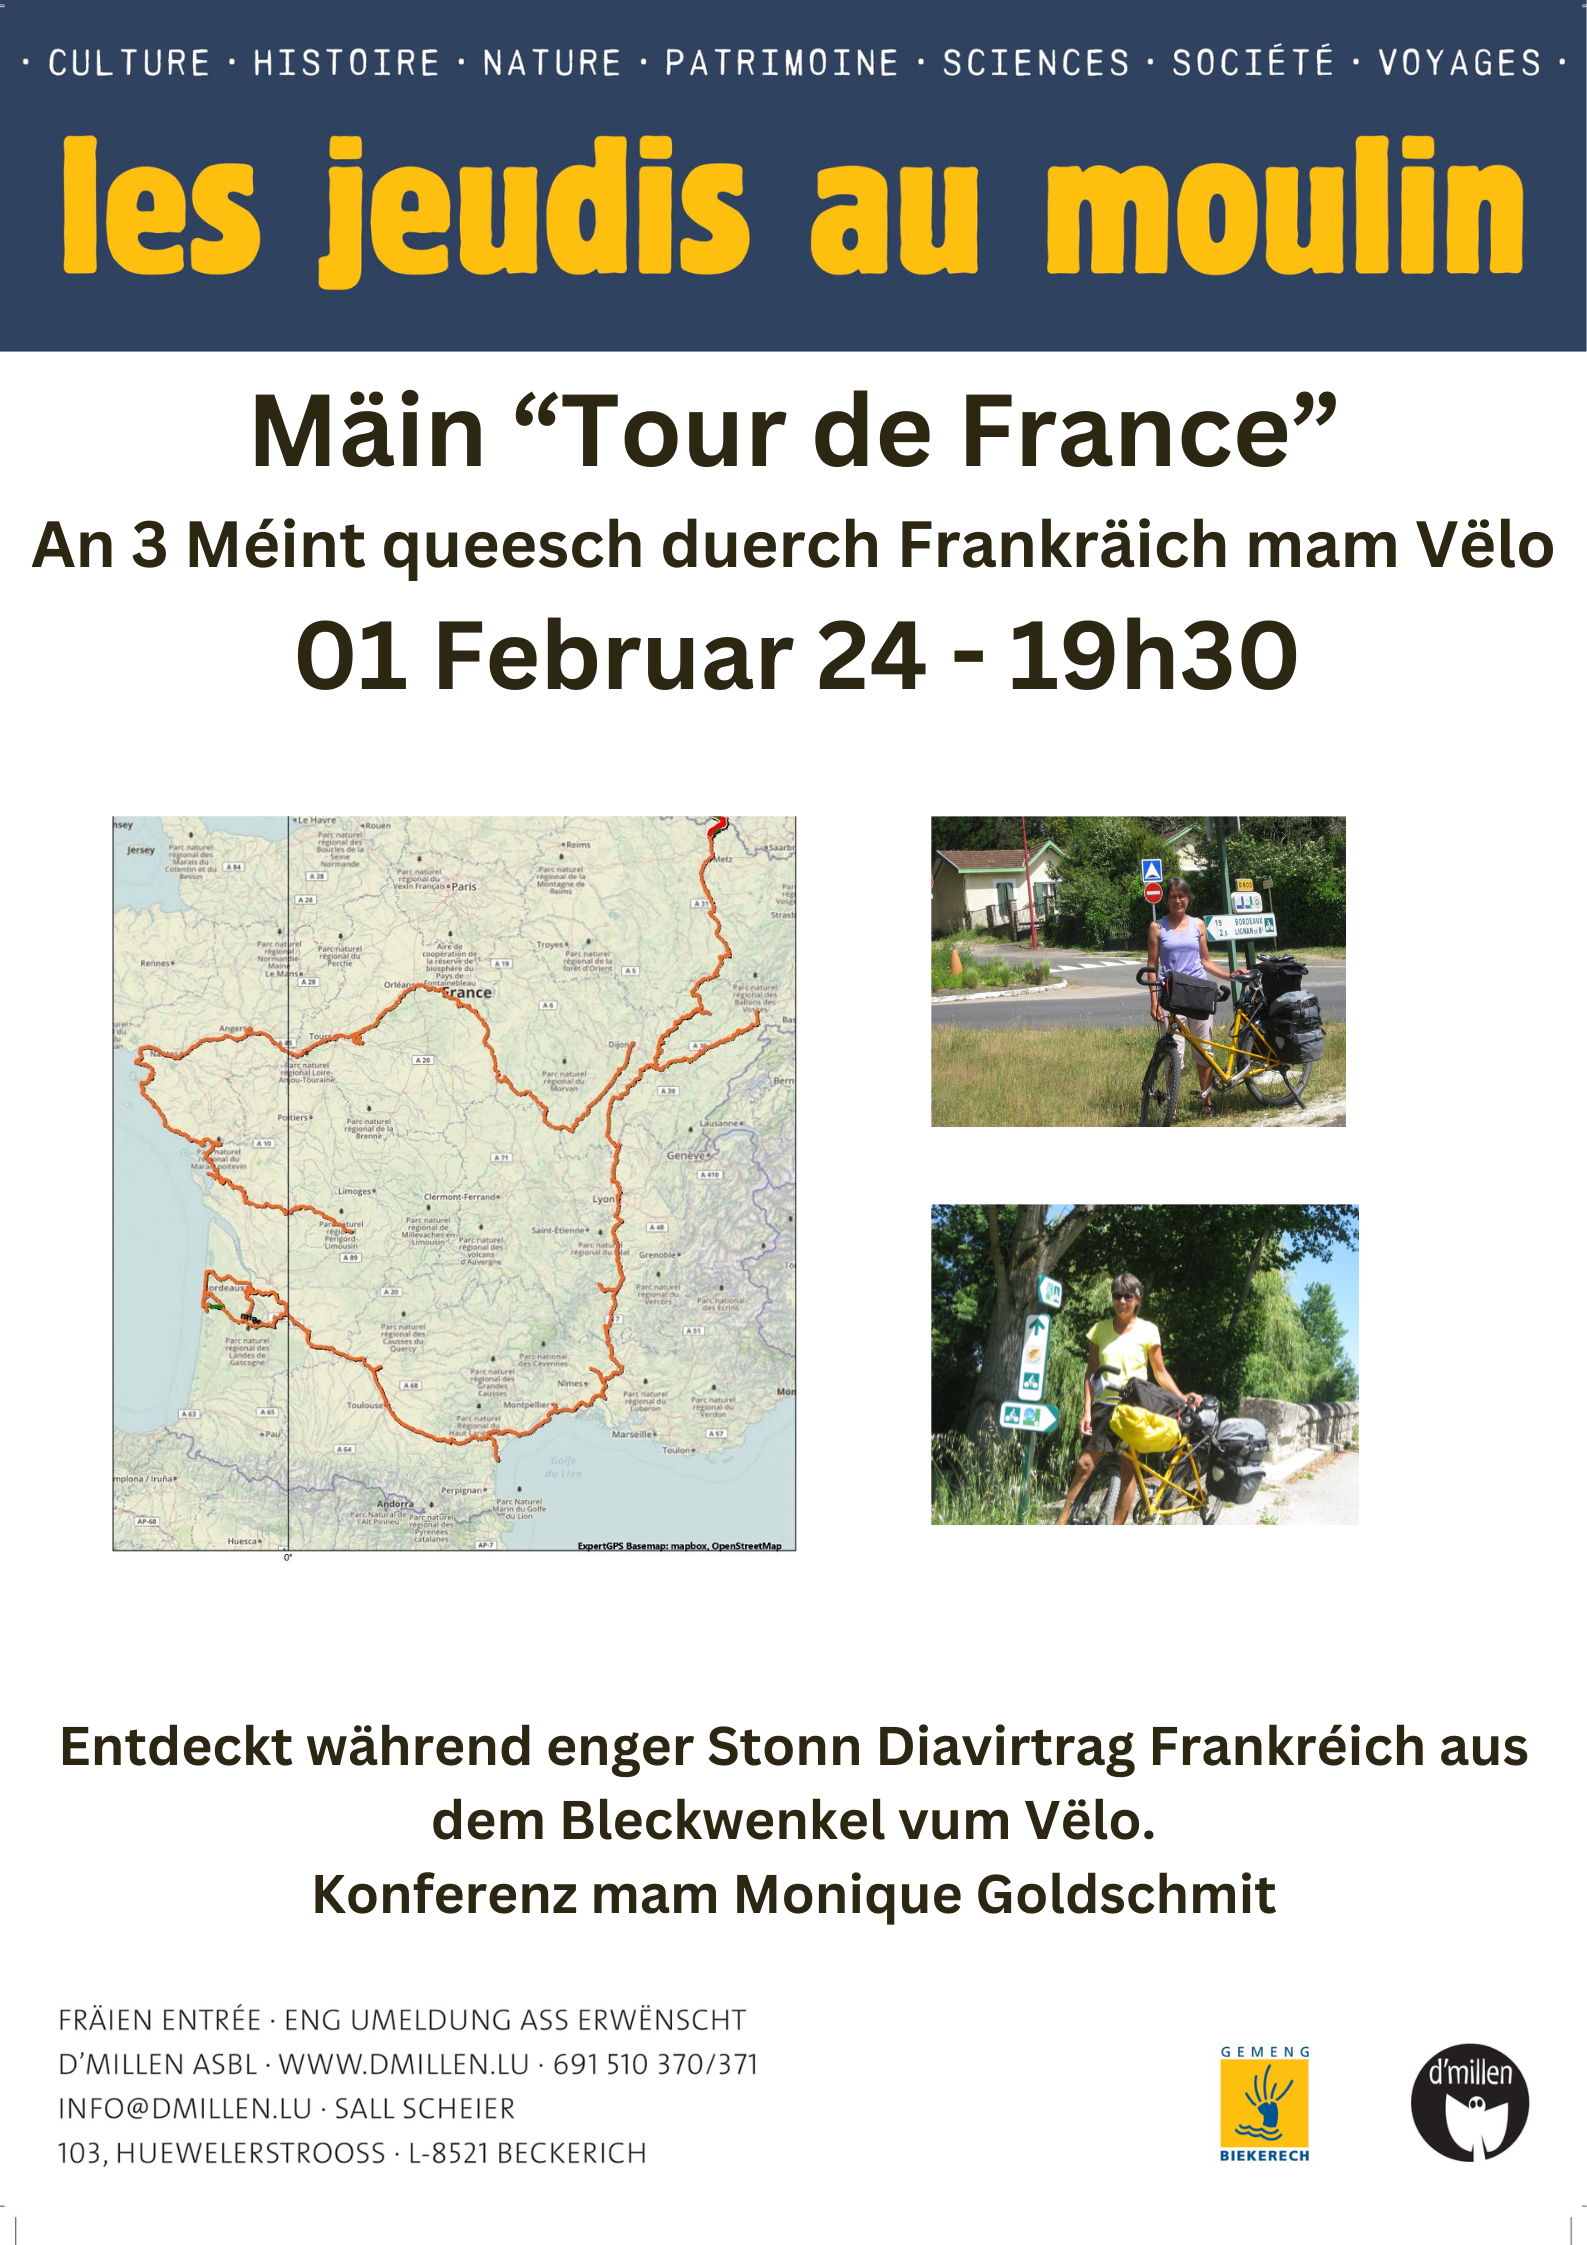 Conference: "My Tour de France"